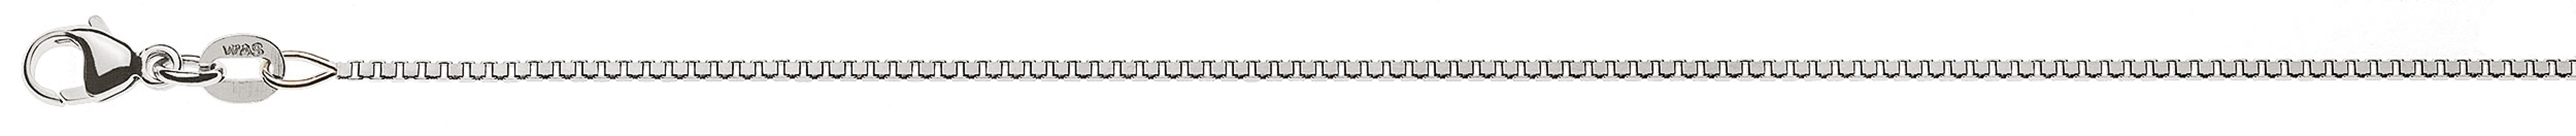 AURONOS Prestige Halskette Weissgold 18K Venezianerkette diamantiert 42cm 1.1mm